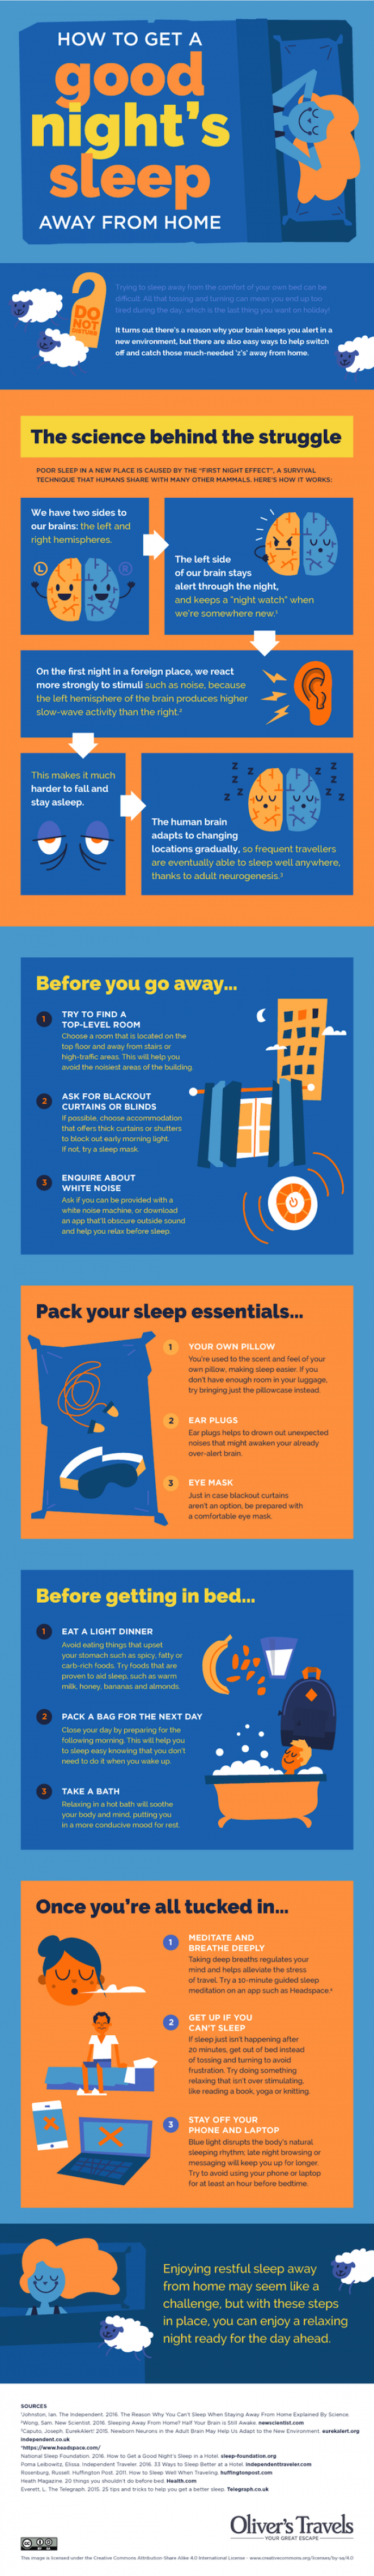 Kako kvalitetno spavati tijekom putovanja?